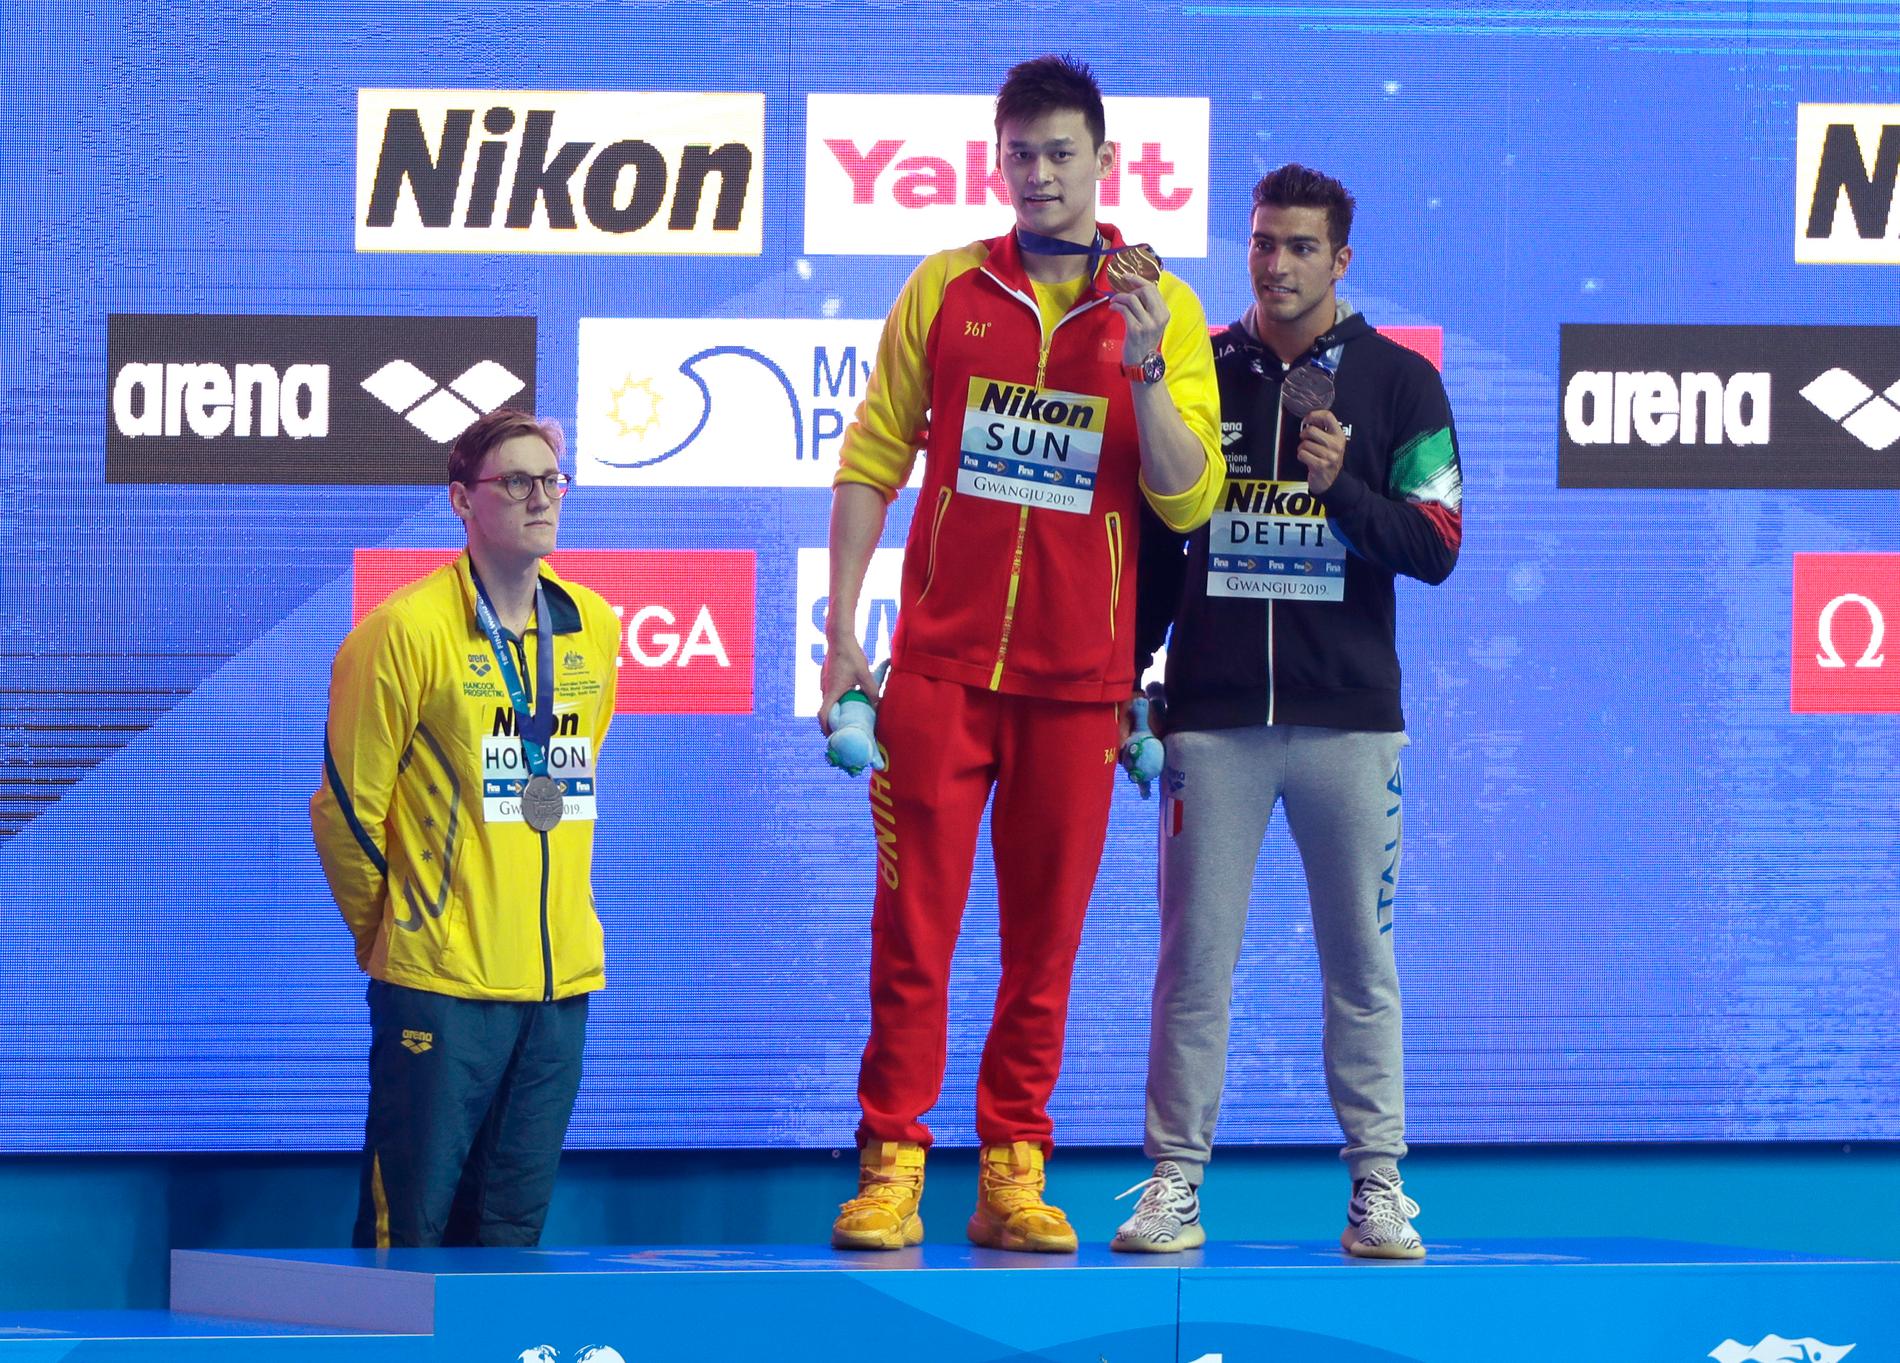 Australiens silvermedaljör Mack Horton, till vänster, vägrade gå upp på prispallen tillsammans med Kinas guldmedaljör Sun Yang. Nu hyllas Horton för sin protest. Till höger Italiens bronsmedaljör Gabriele Detti.